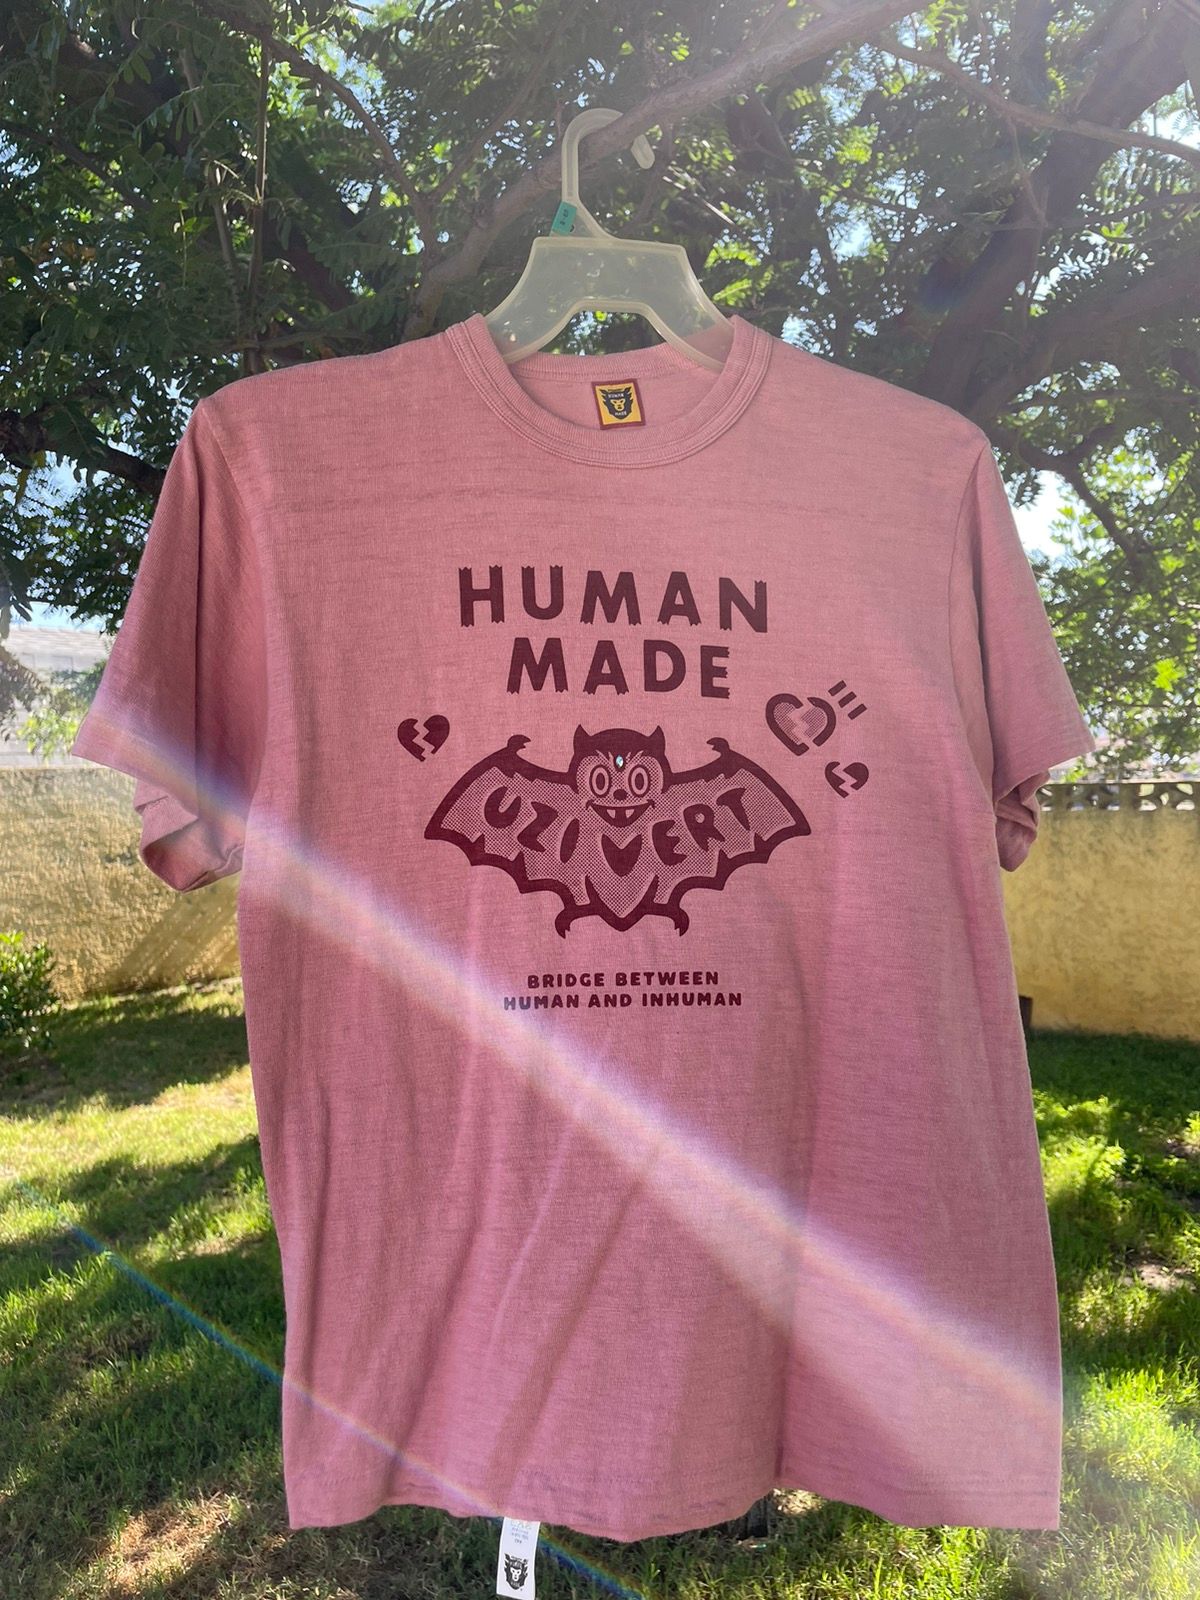 lv x human made t shirt